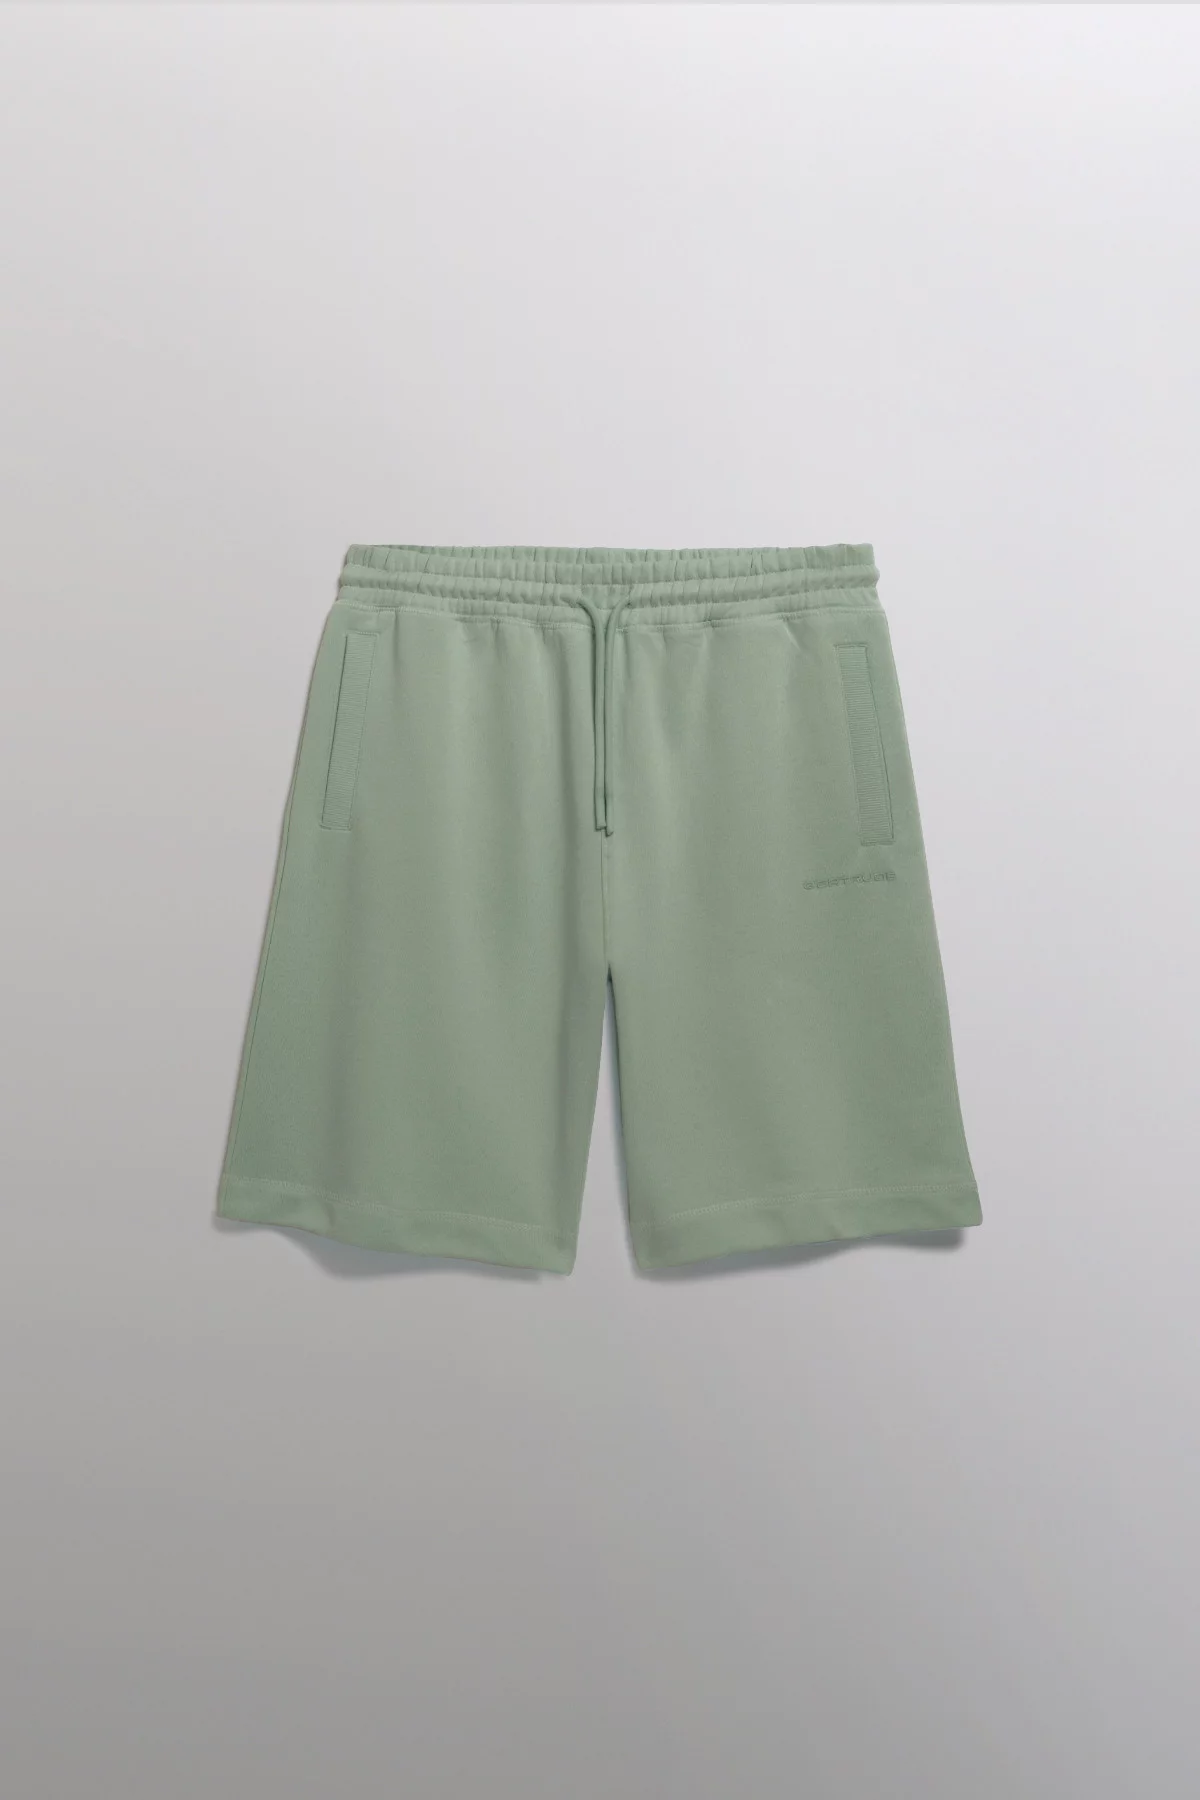 Yann cotton fleece shorts